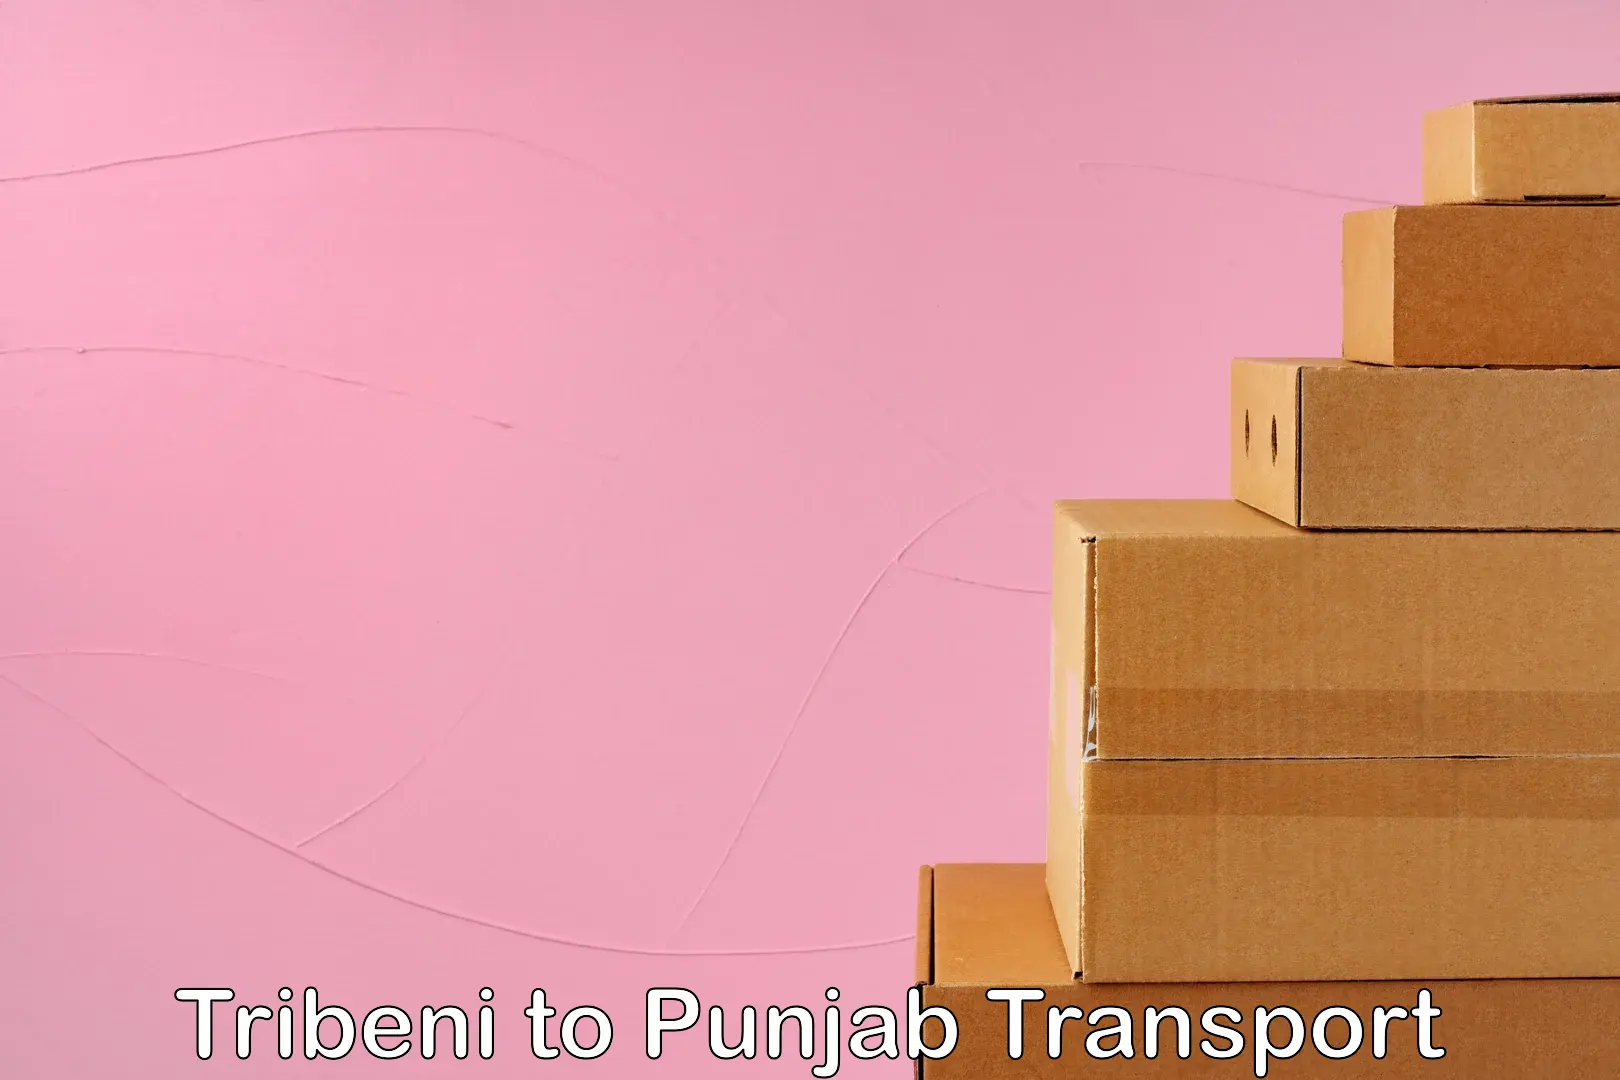 Express transport services Tribeni to Punjab